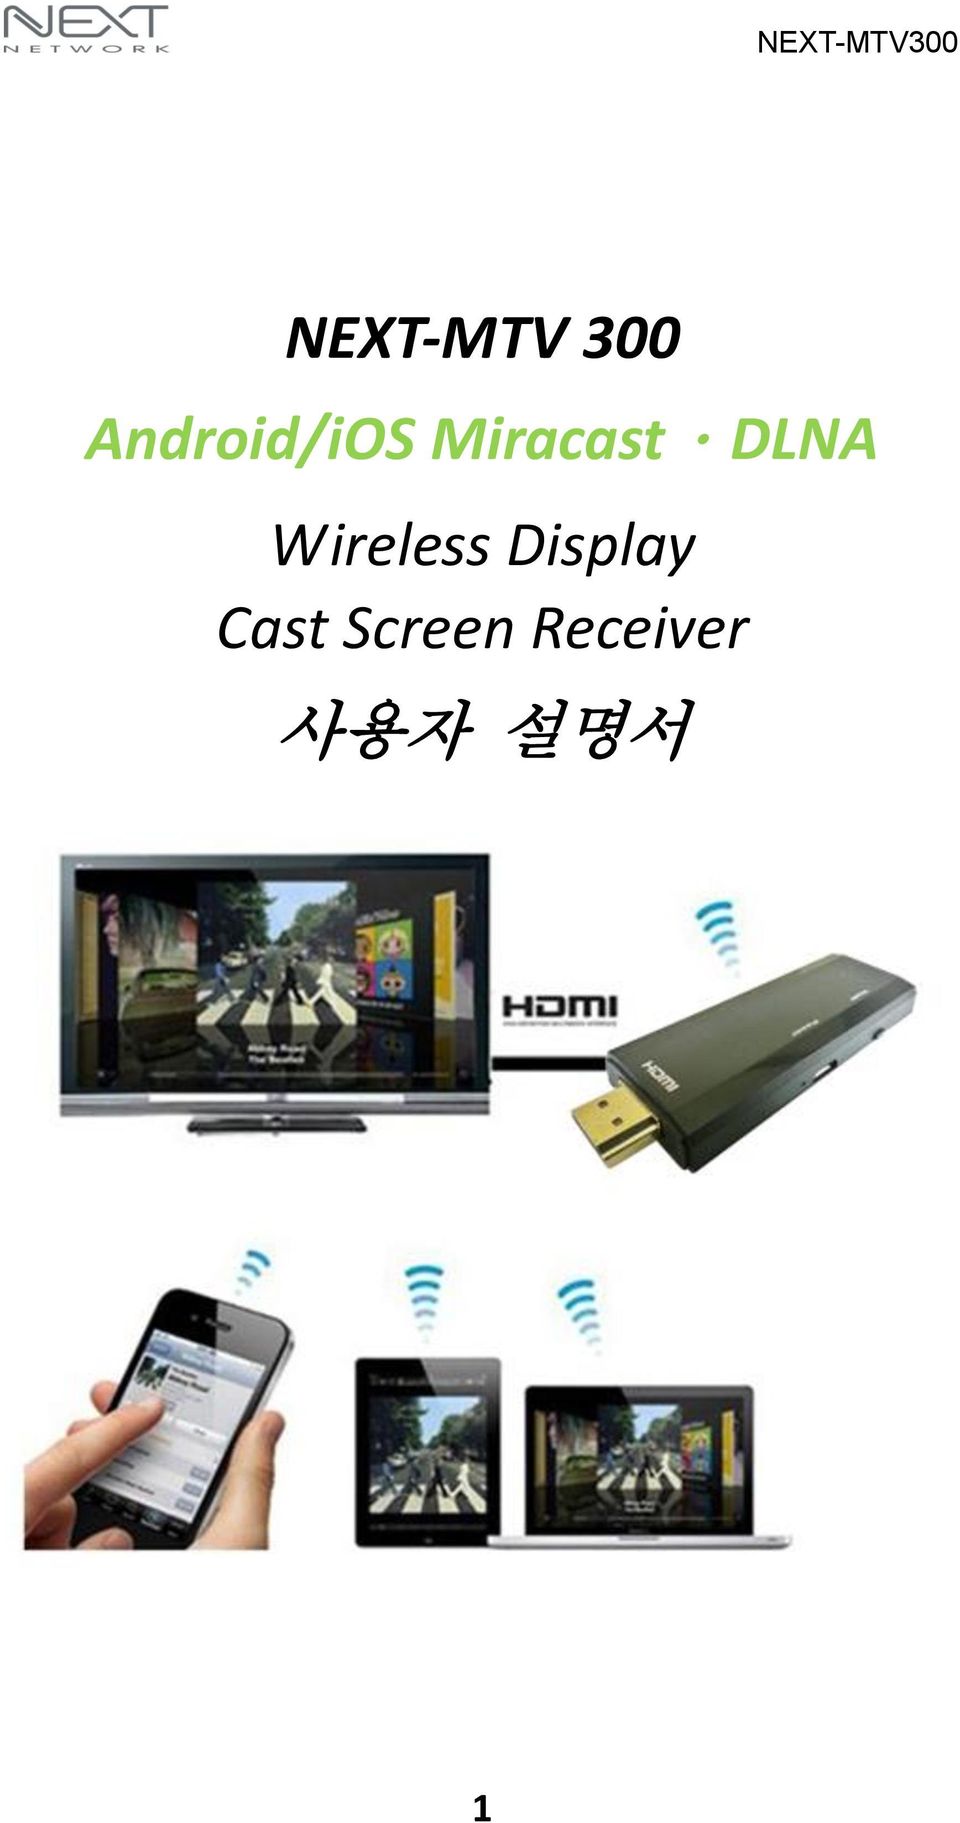 DLNA Wireless Display